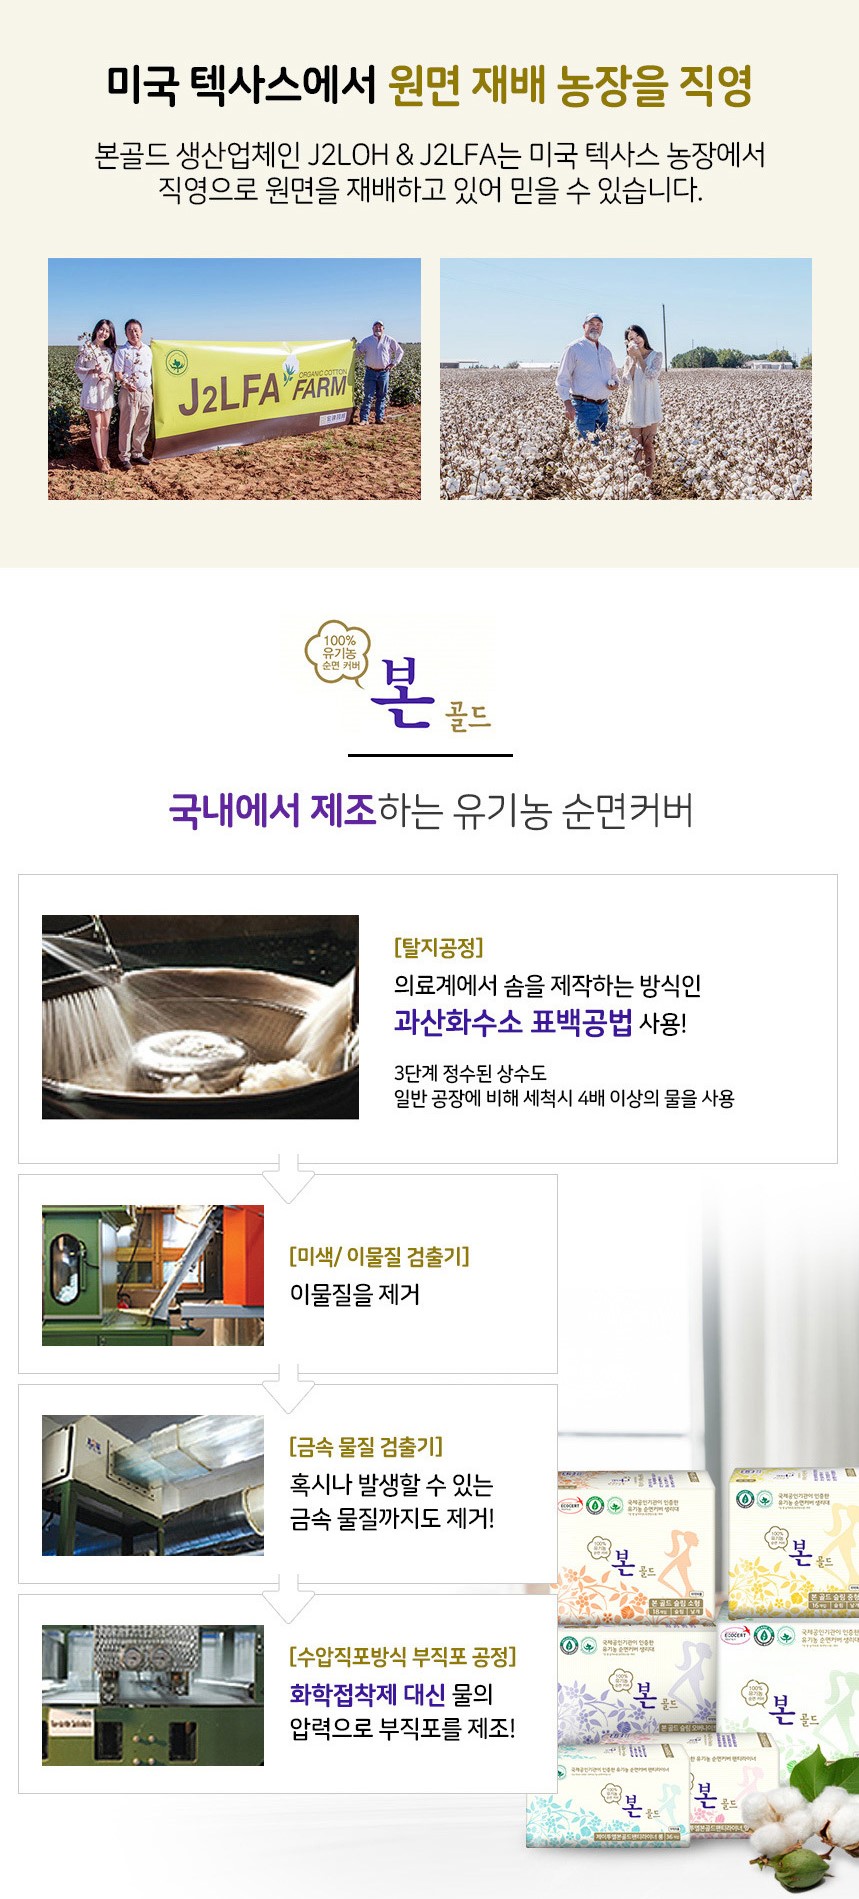 韓國食品-[유기농본] 골드 유기농순면커버 생리대 [대형 280mm] (14개입)